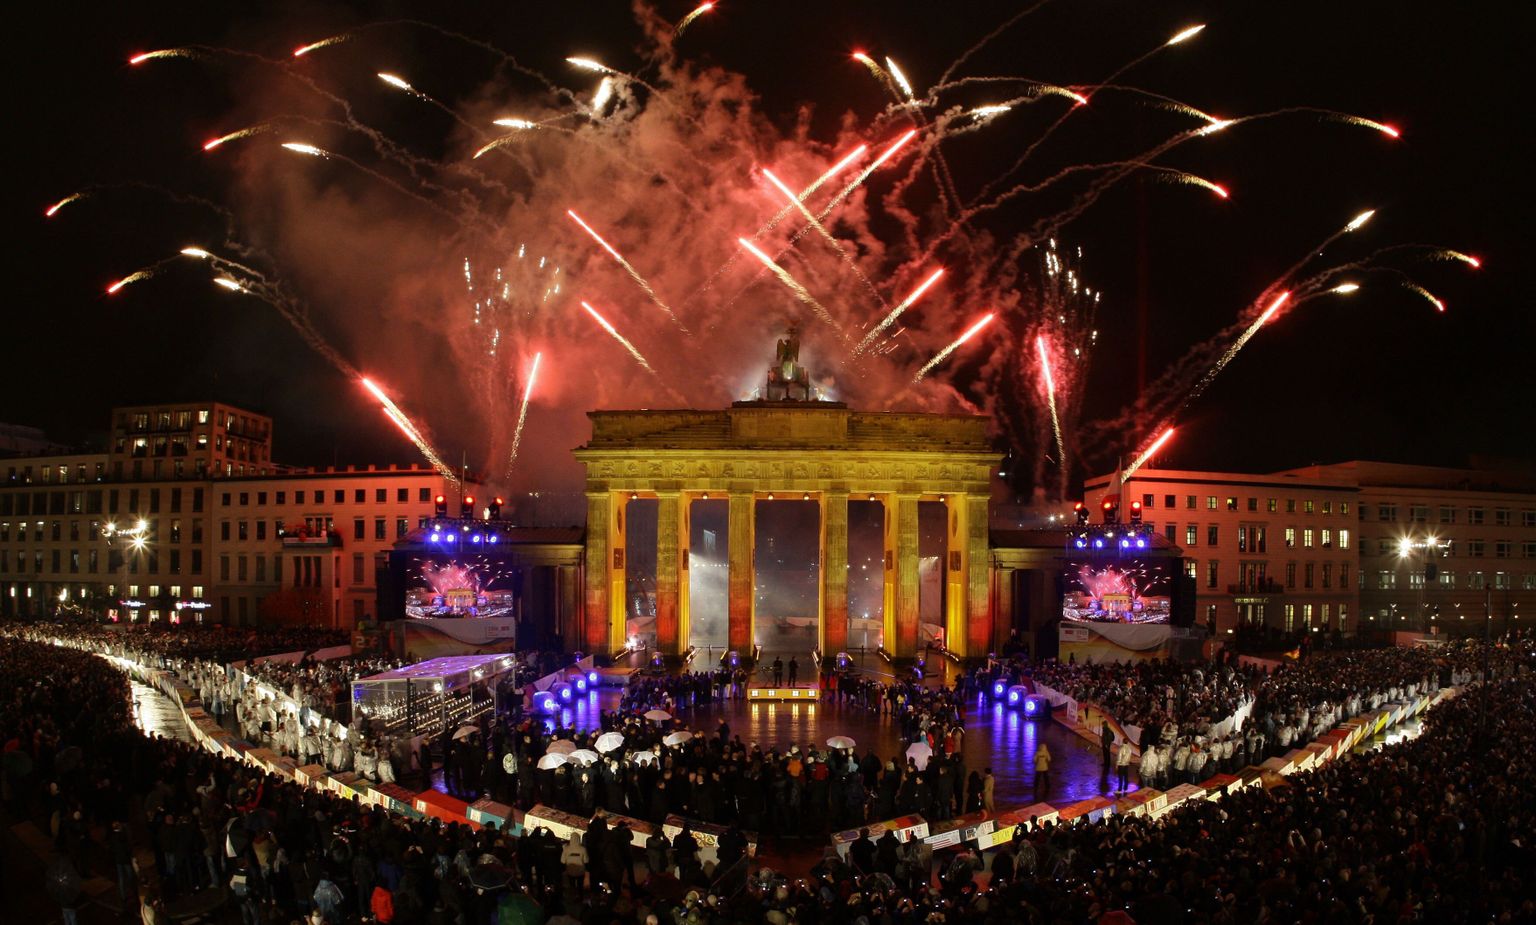 Berliini müüri langemise 20. aastapäeva pidustused tipnesid üleeile suurejoonelise ilutulestikuga Brandenburgi värava kohal.